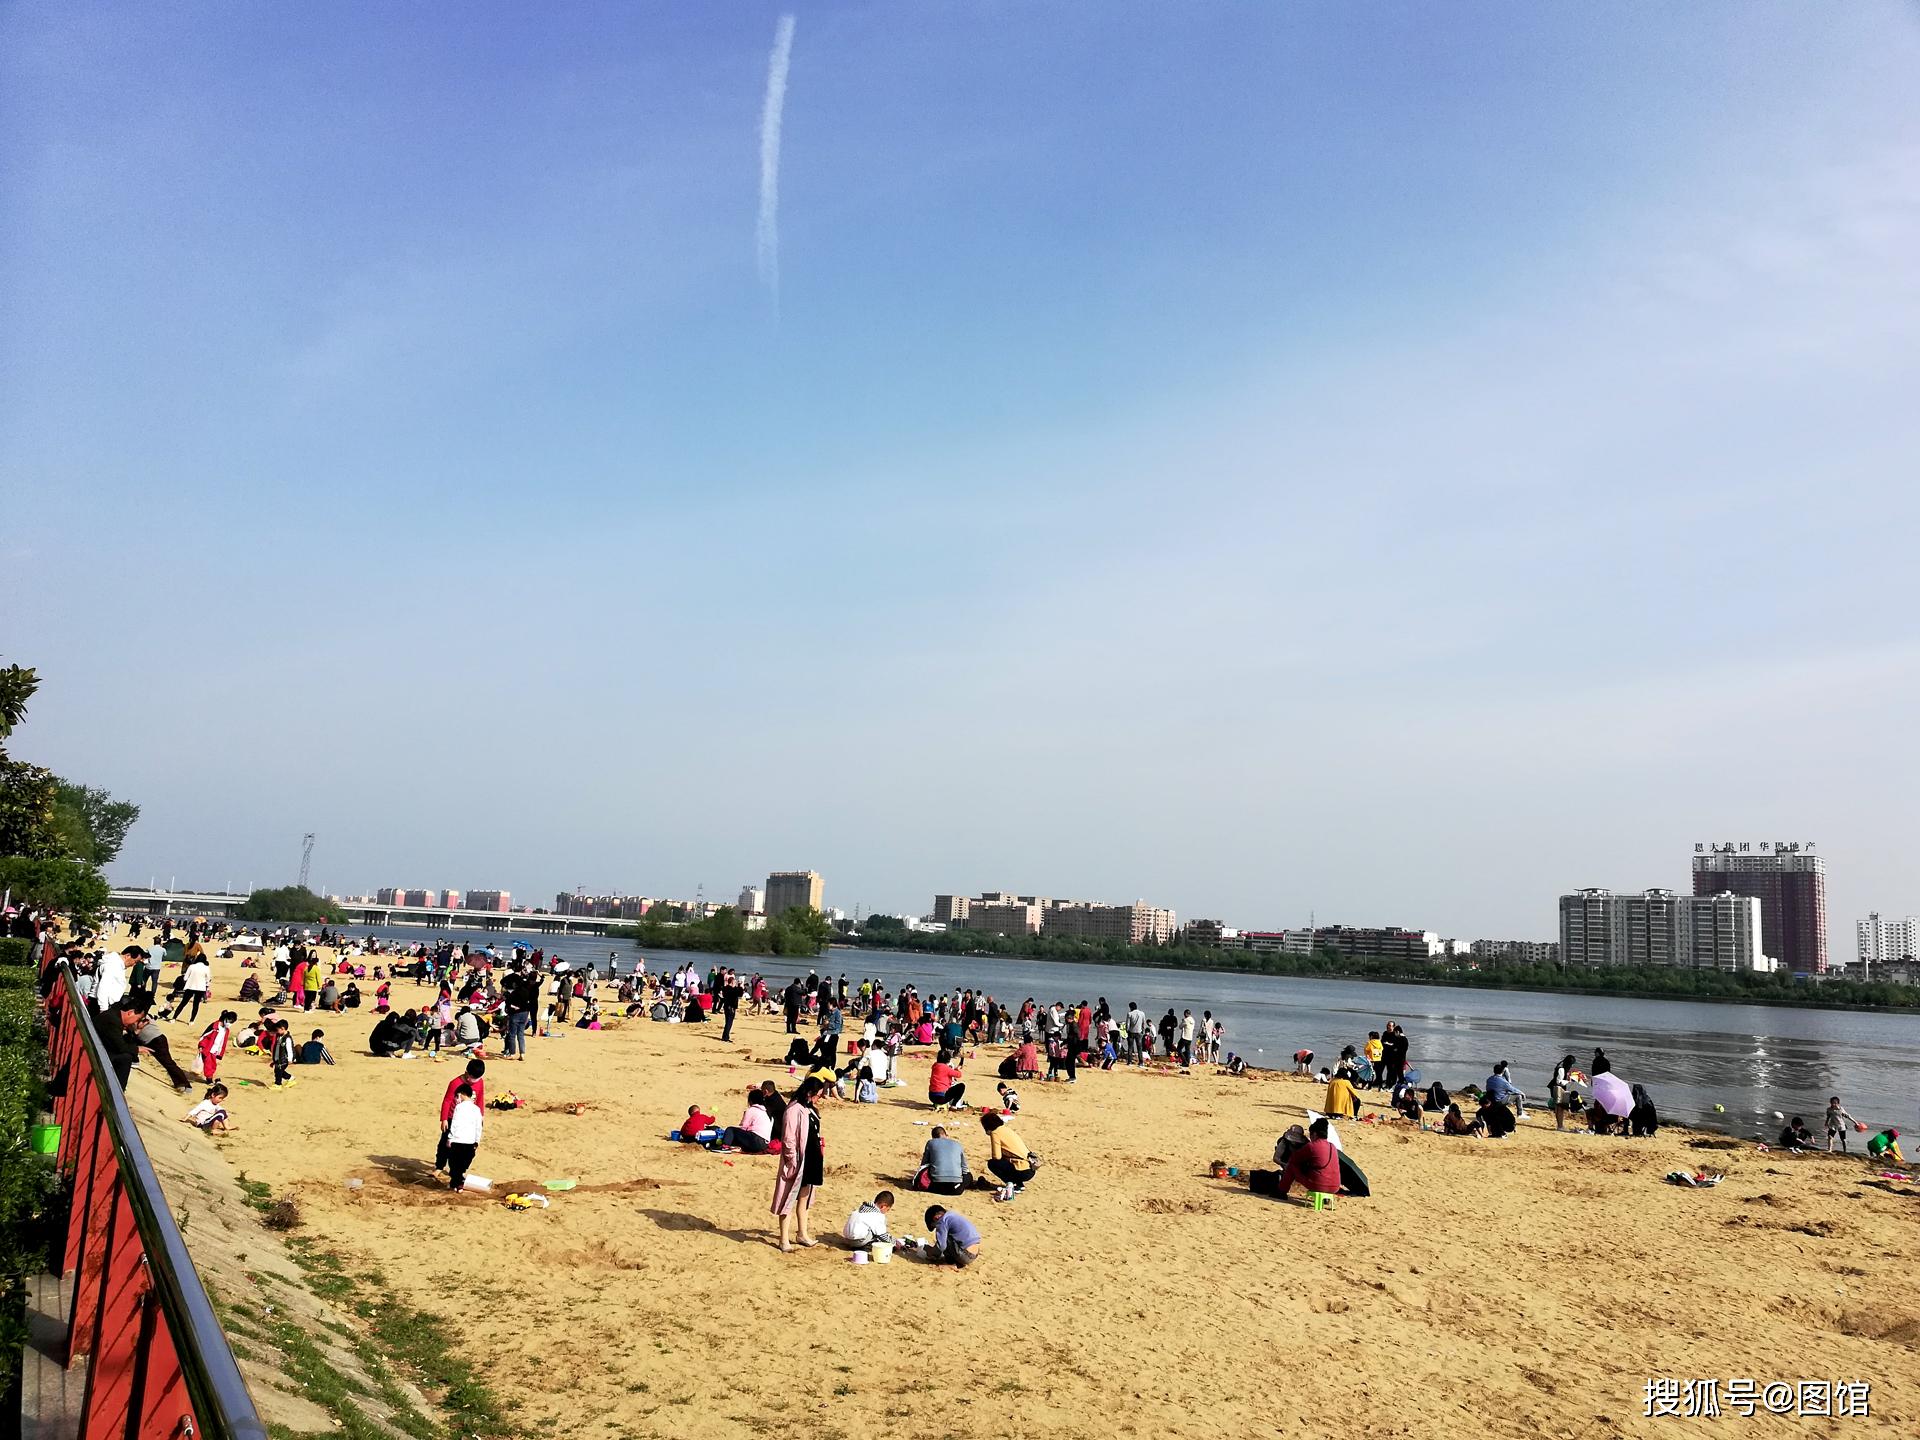 从这看南阳真像海滨城市,白河沙滩引来数百人玩耍